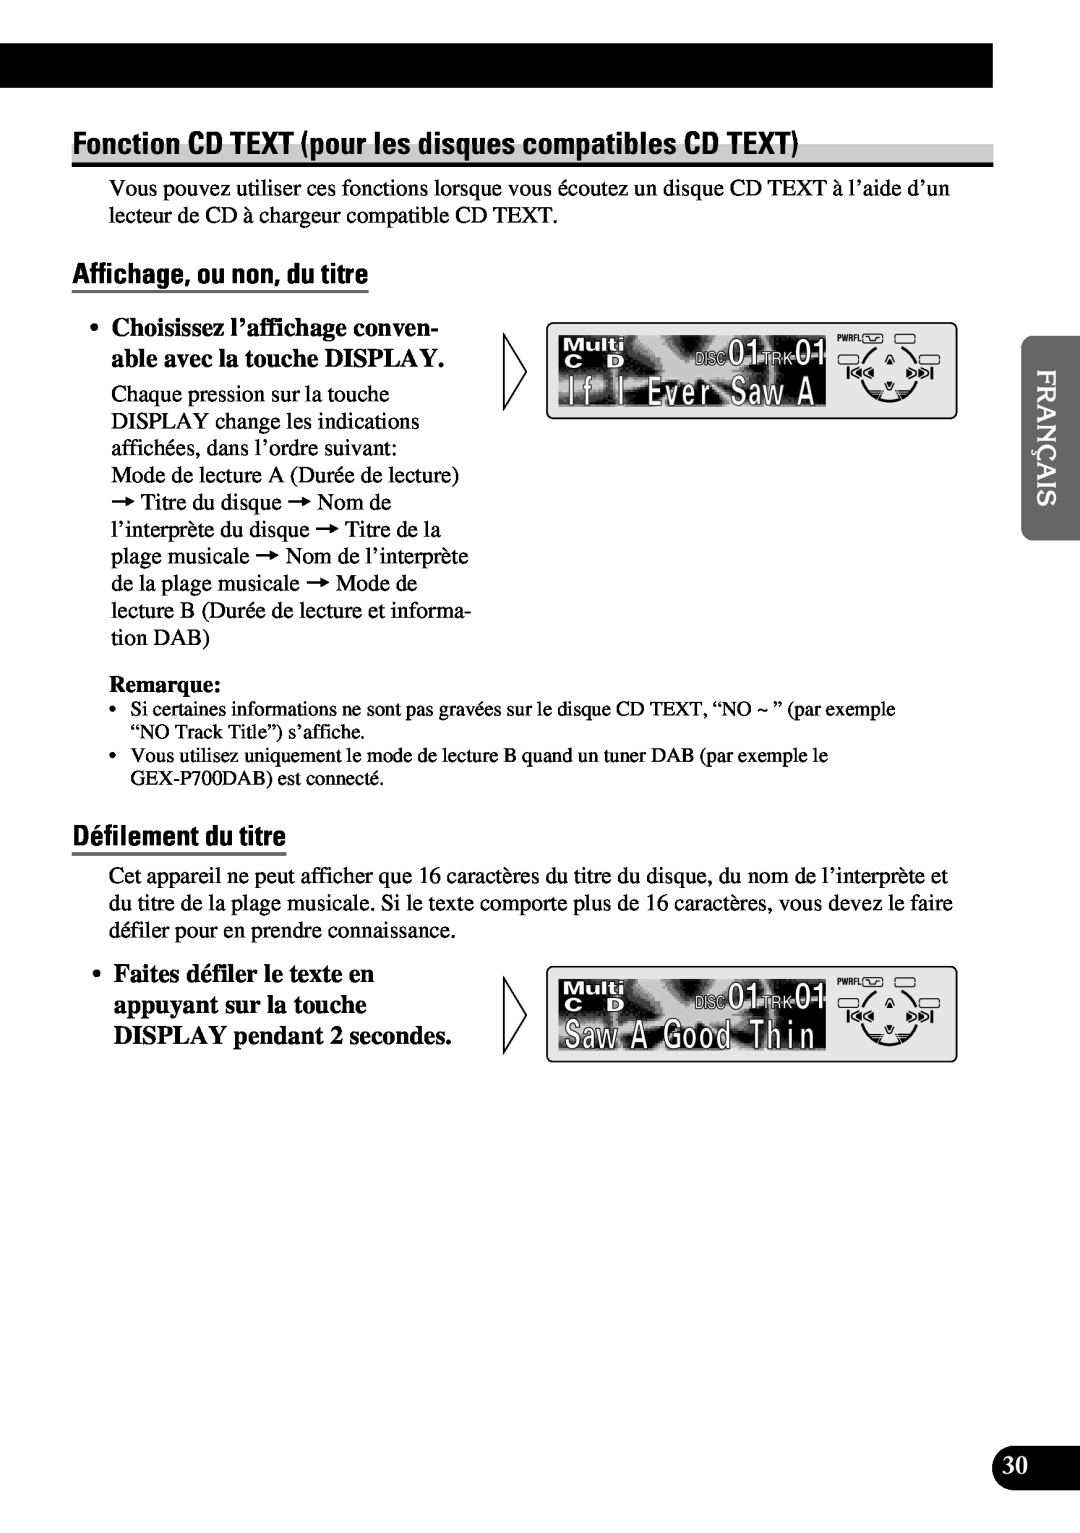 Pioneer DEH-P6300 Fonction CD TEXT pour les disques compatibles CD TEXT, Affichage, ou non, du titre, Défilement du titre 